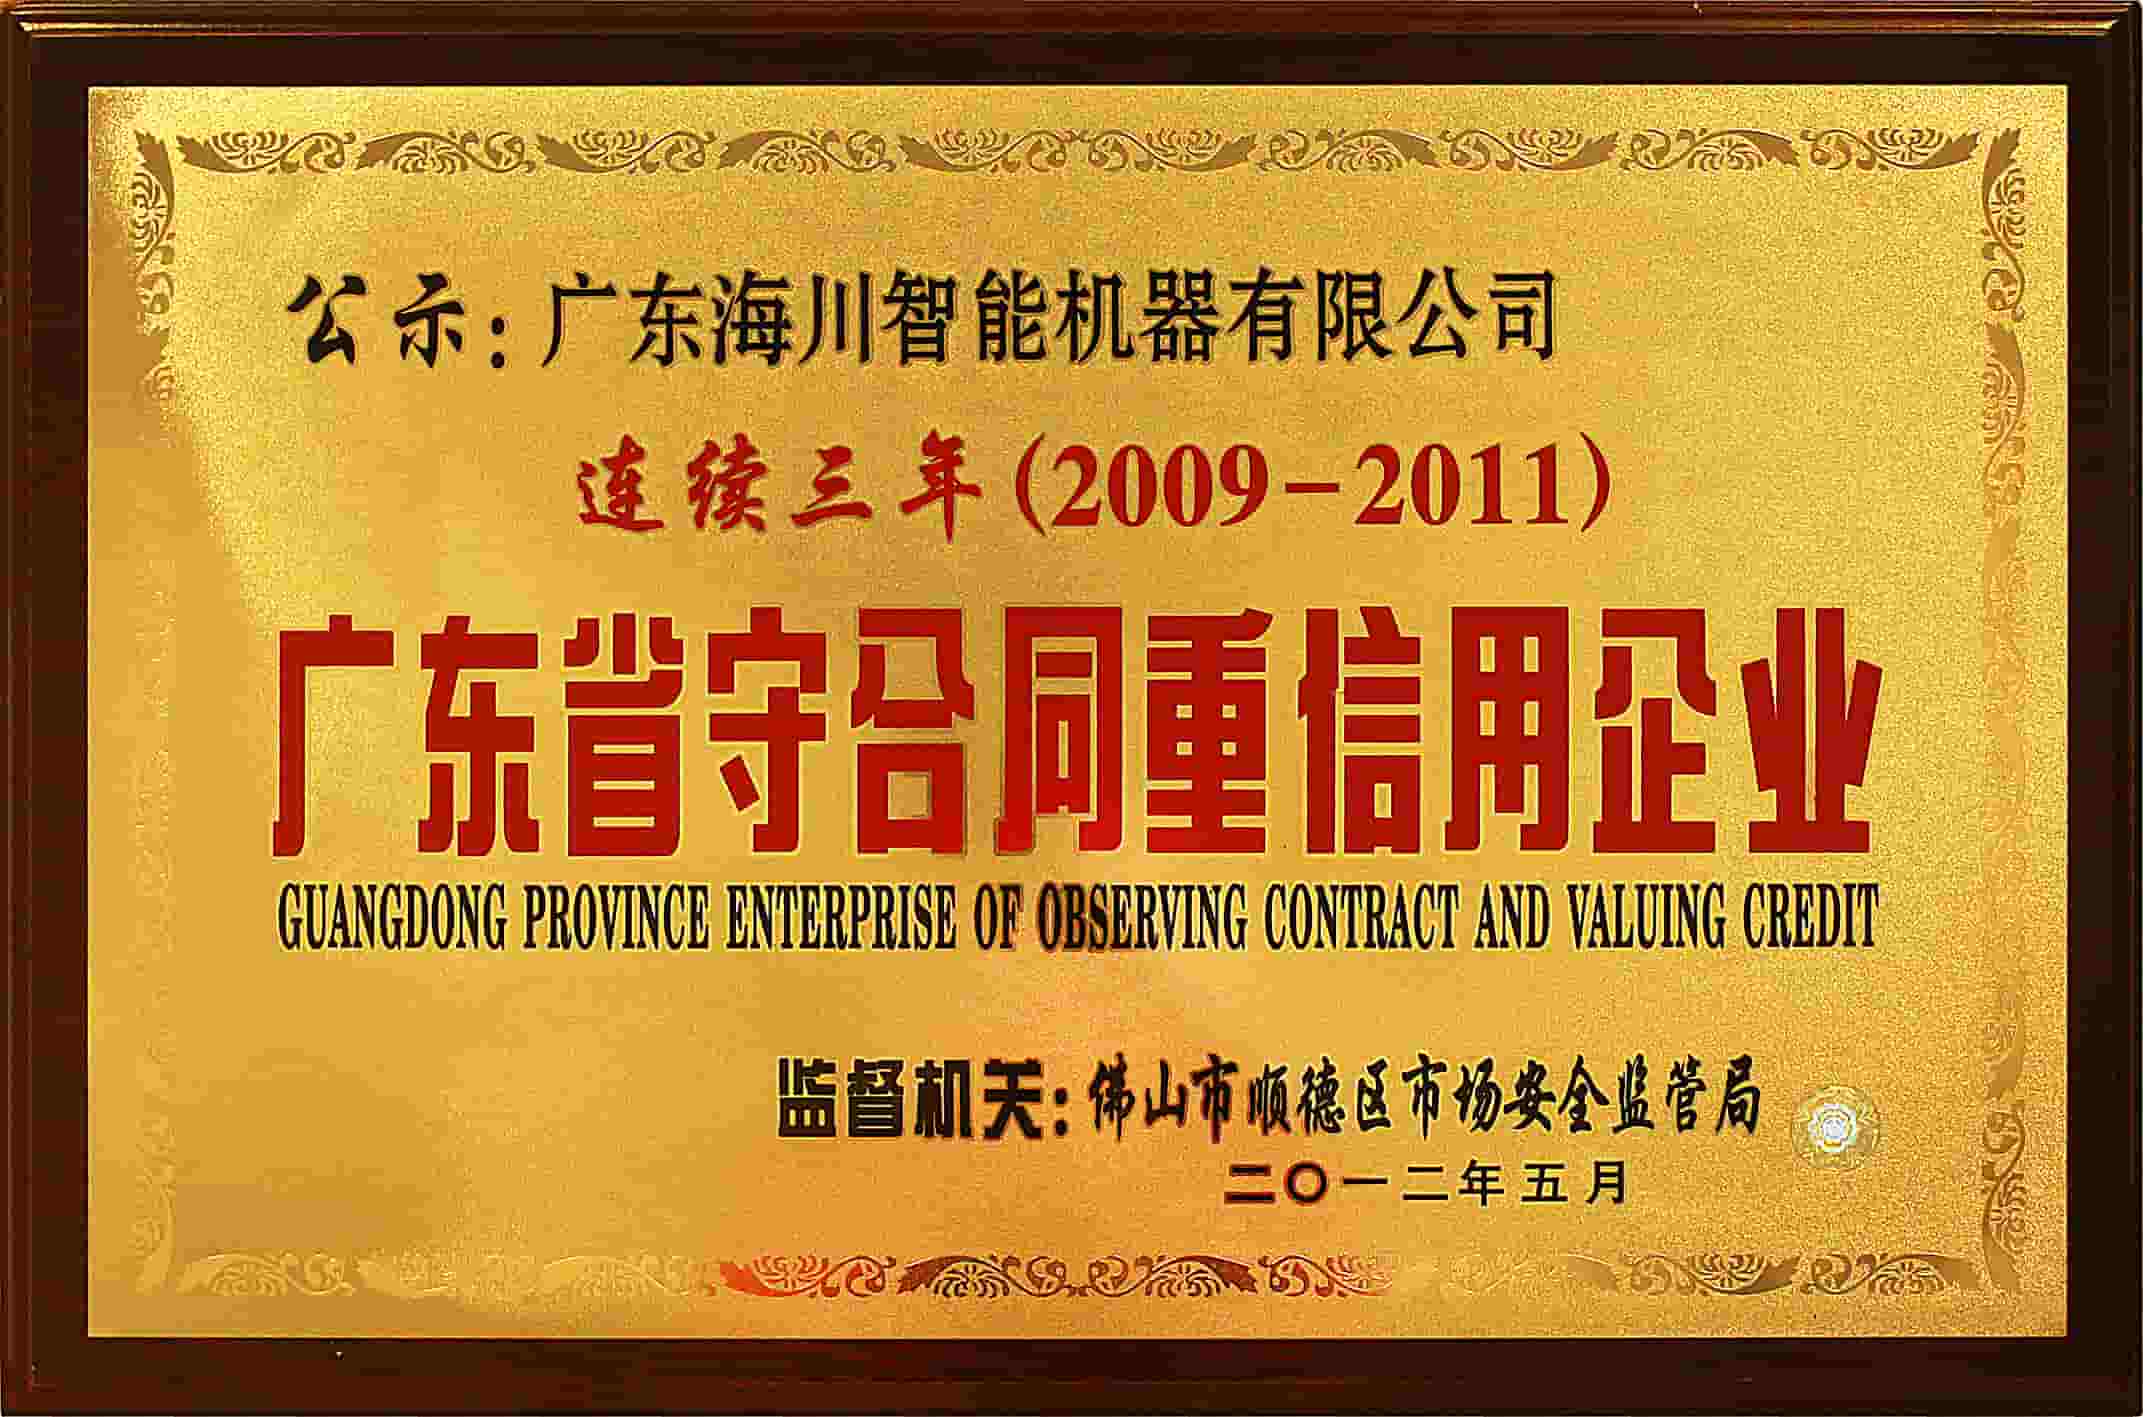 广东-省-企业- - - - - - -观察- - -合同- - - -评估-贷款- 2009 - 2011